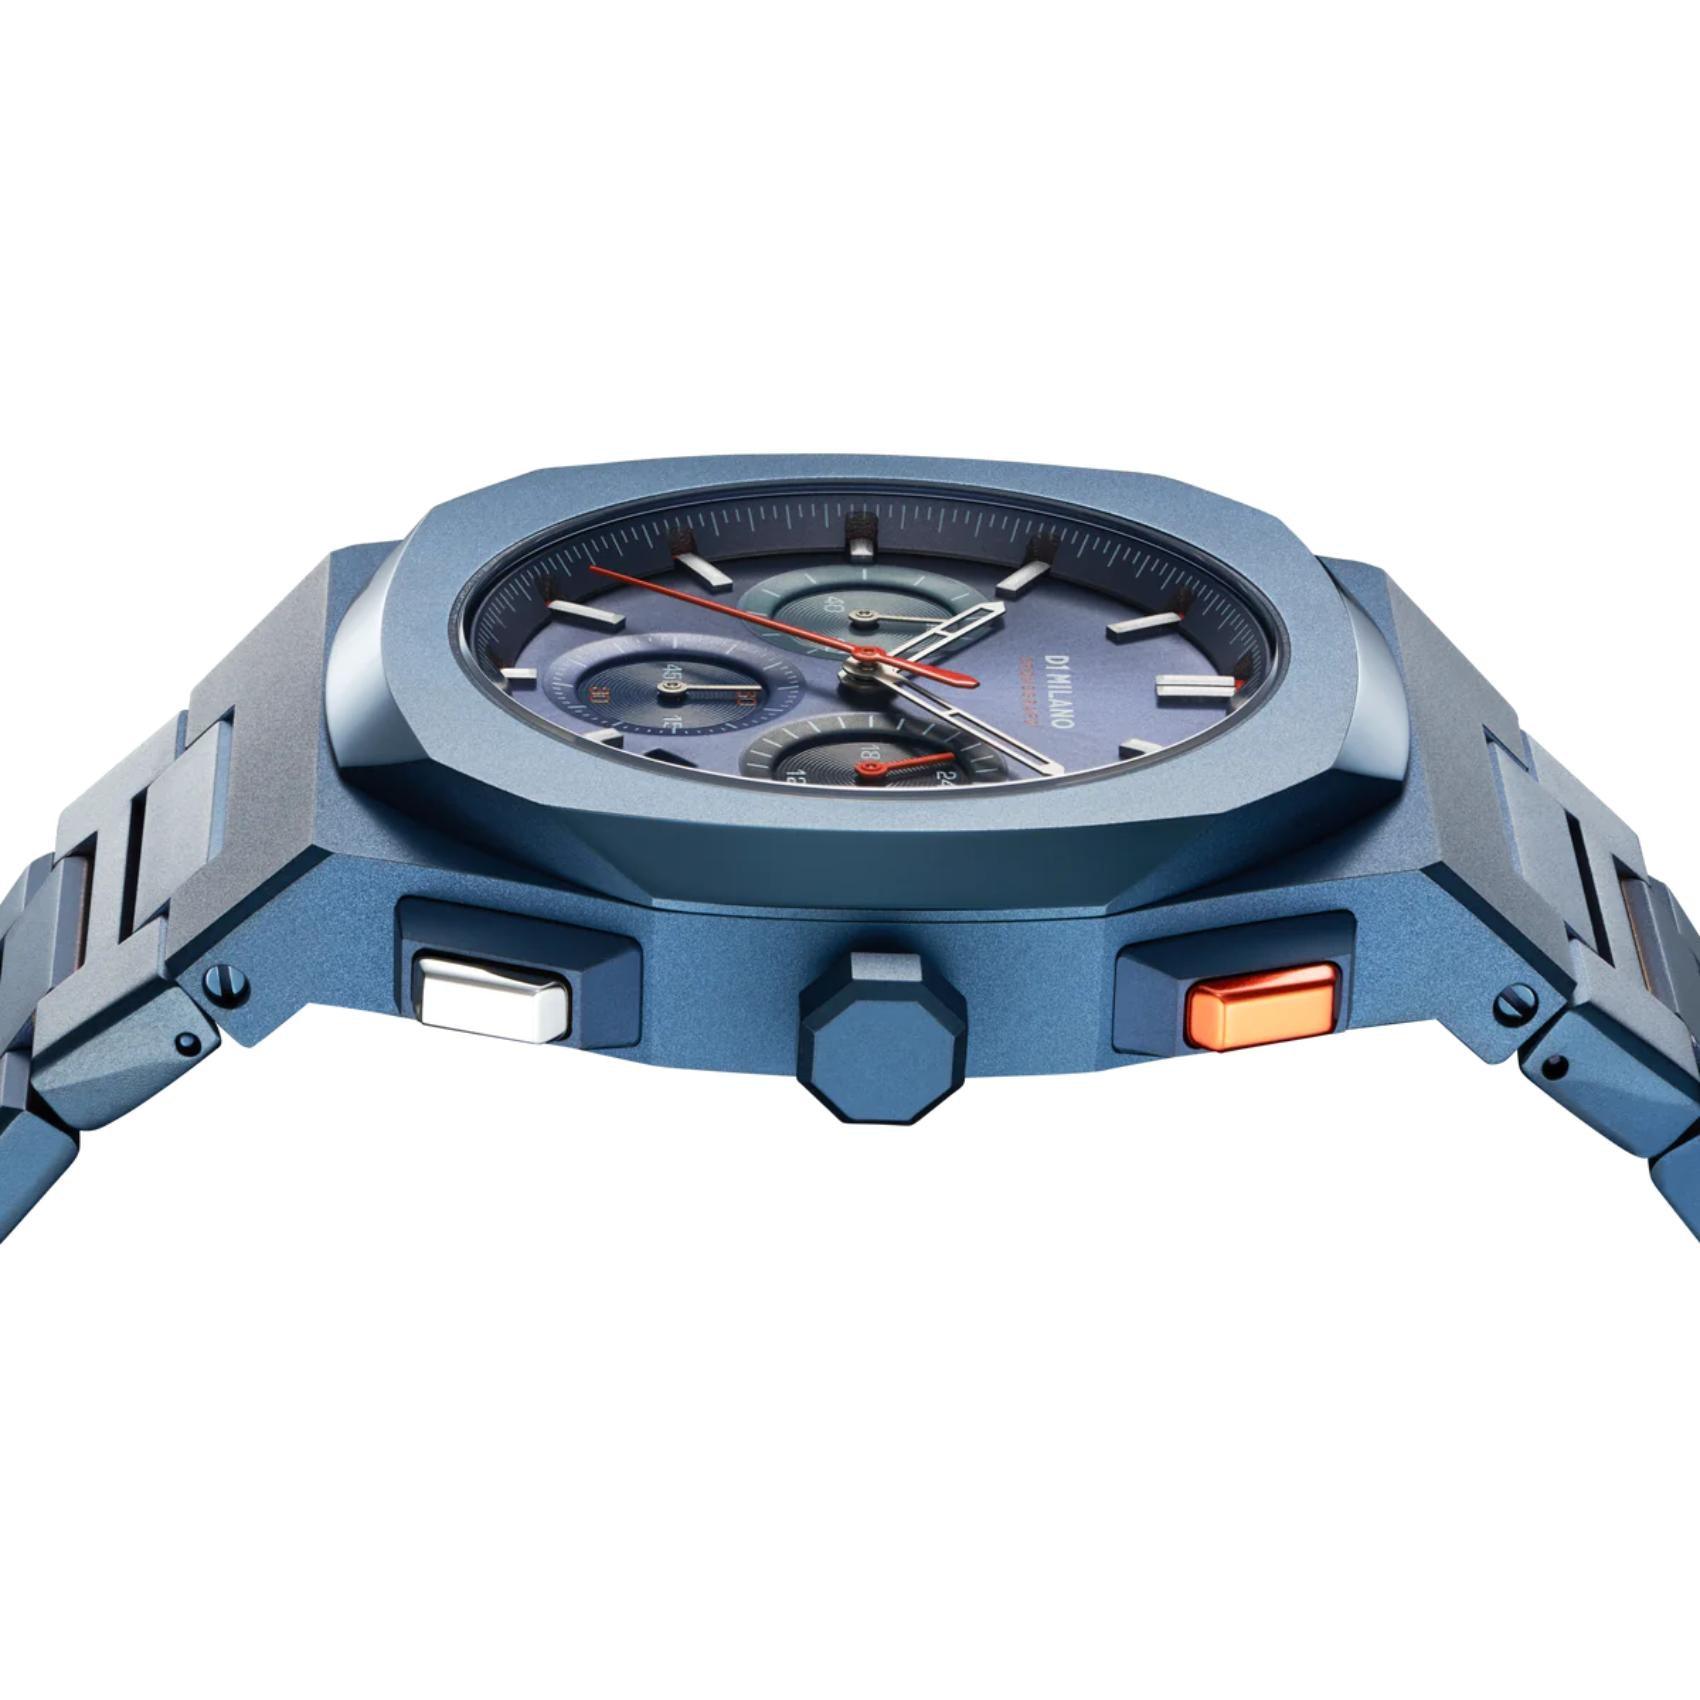 Ρολόι D1 Milano Nox D1-CHBJ12 χρονογράφος με μπλε ατσάλινο μπρασελέ και μπλε καντράν 41.5mm με οκτάγωνο σχήμα.